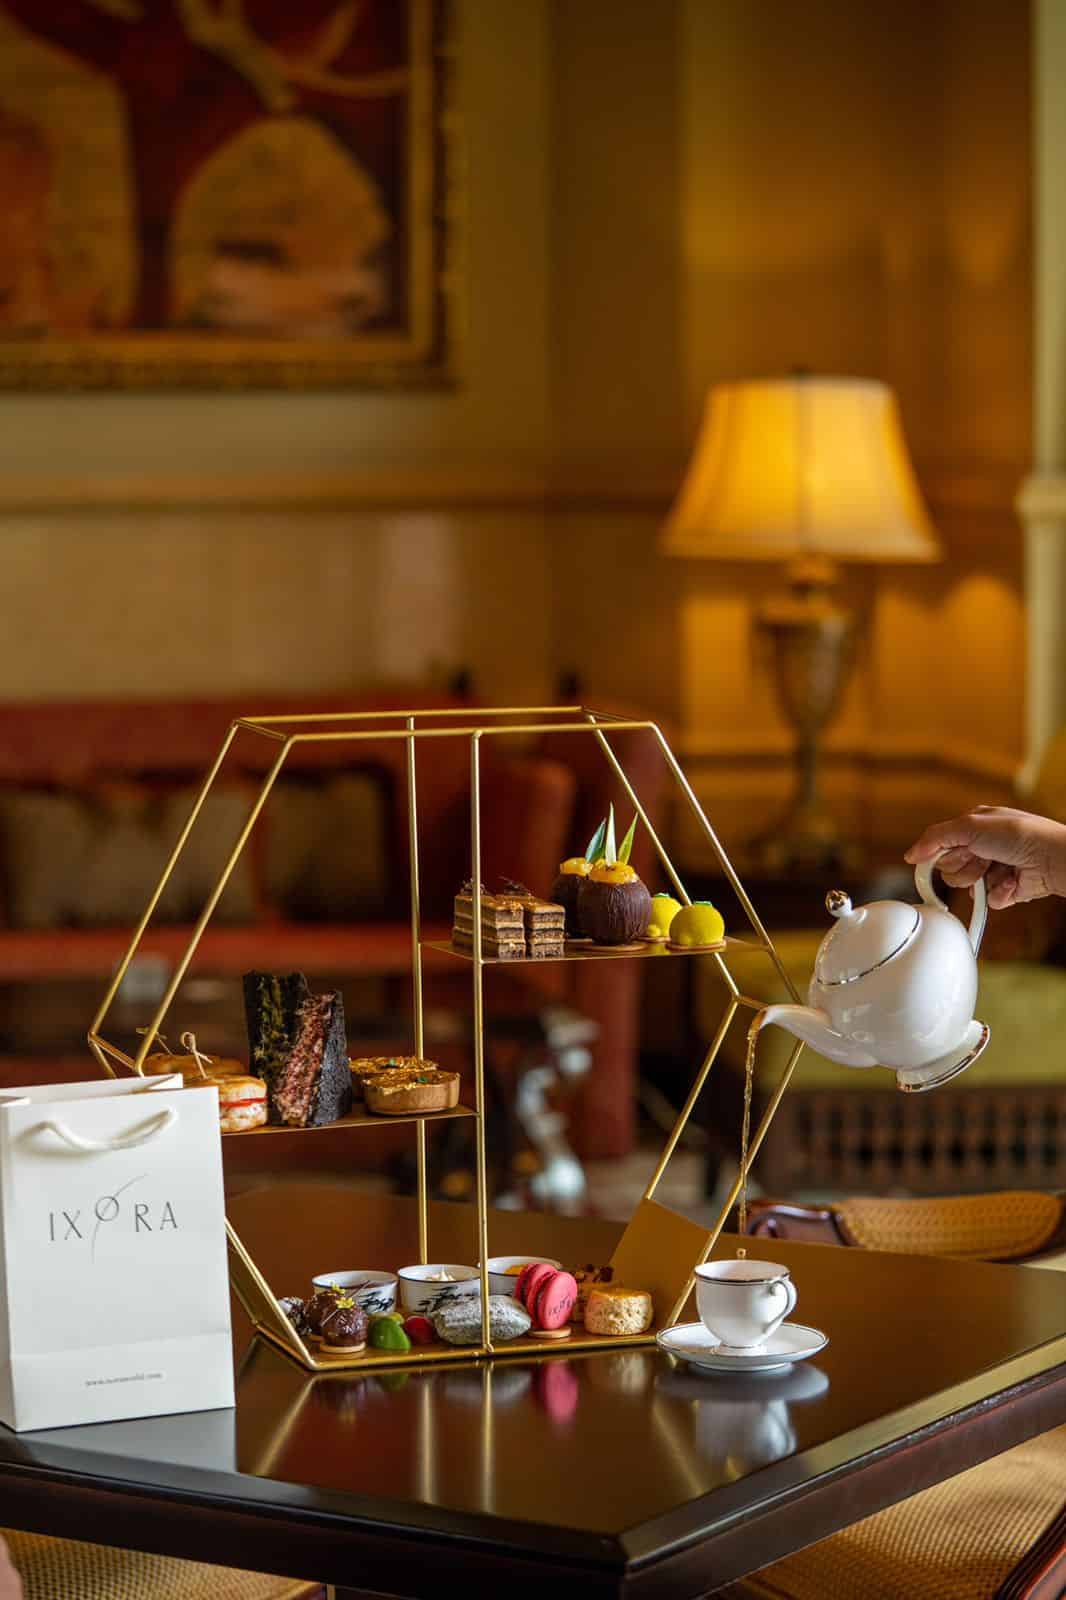 فندق شانغريلا أبوظبي يطلق نسخة محدودة الإصدار من تجربة شاي ما بعد الظهيرة بالتعاون مع إكسورا